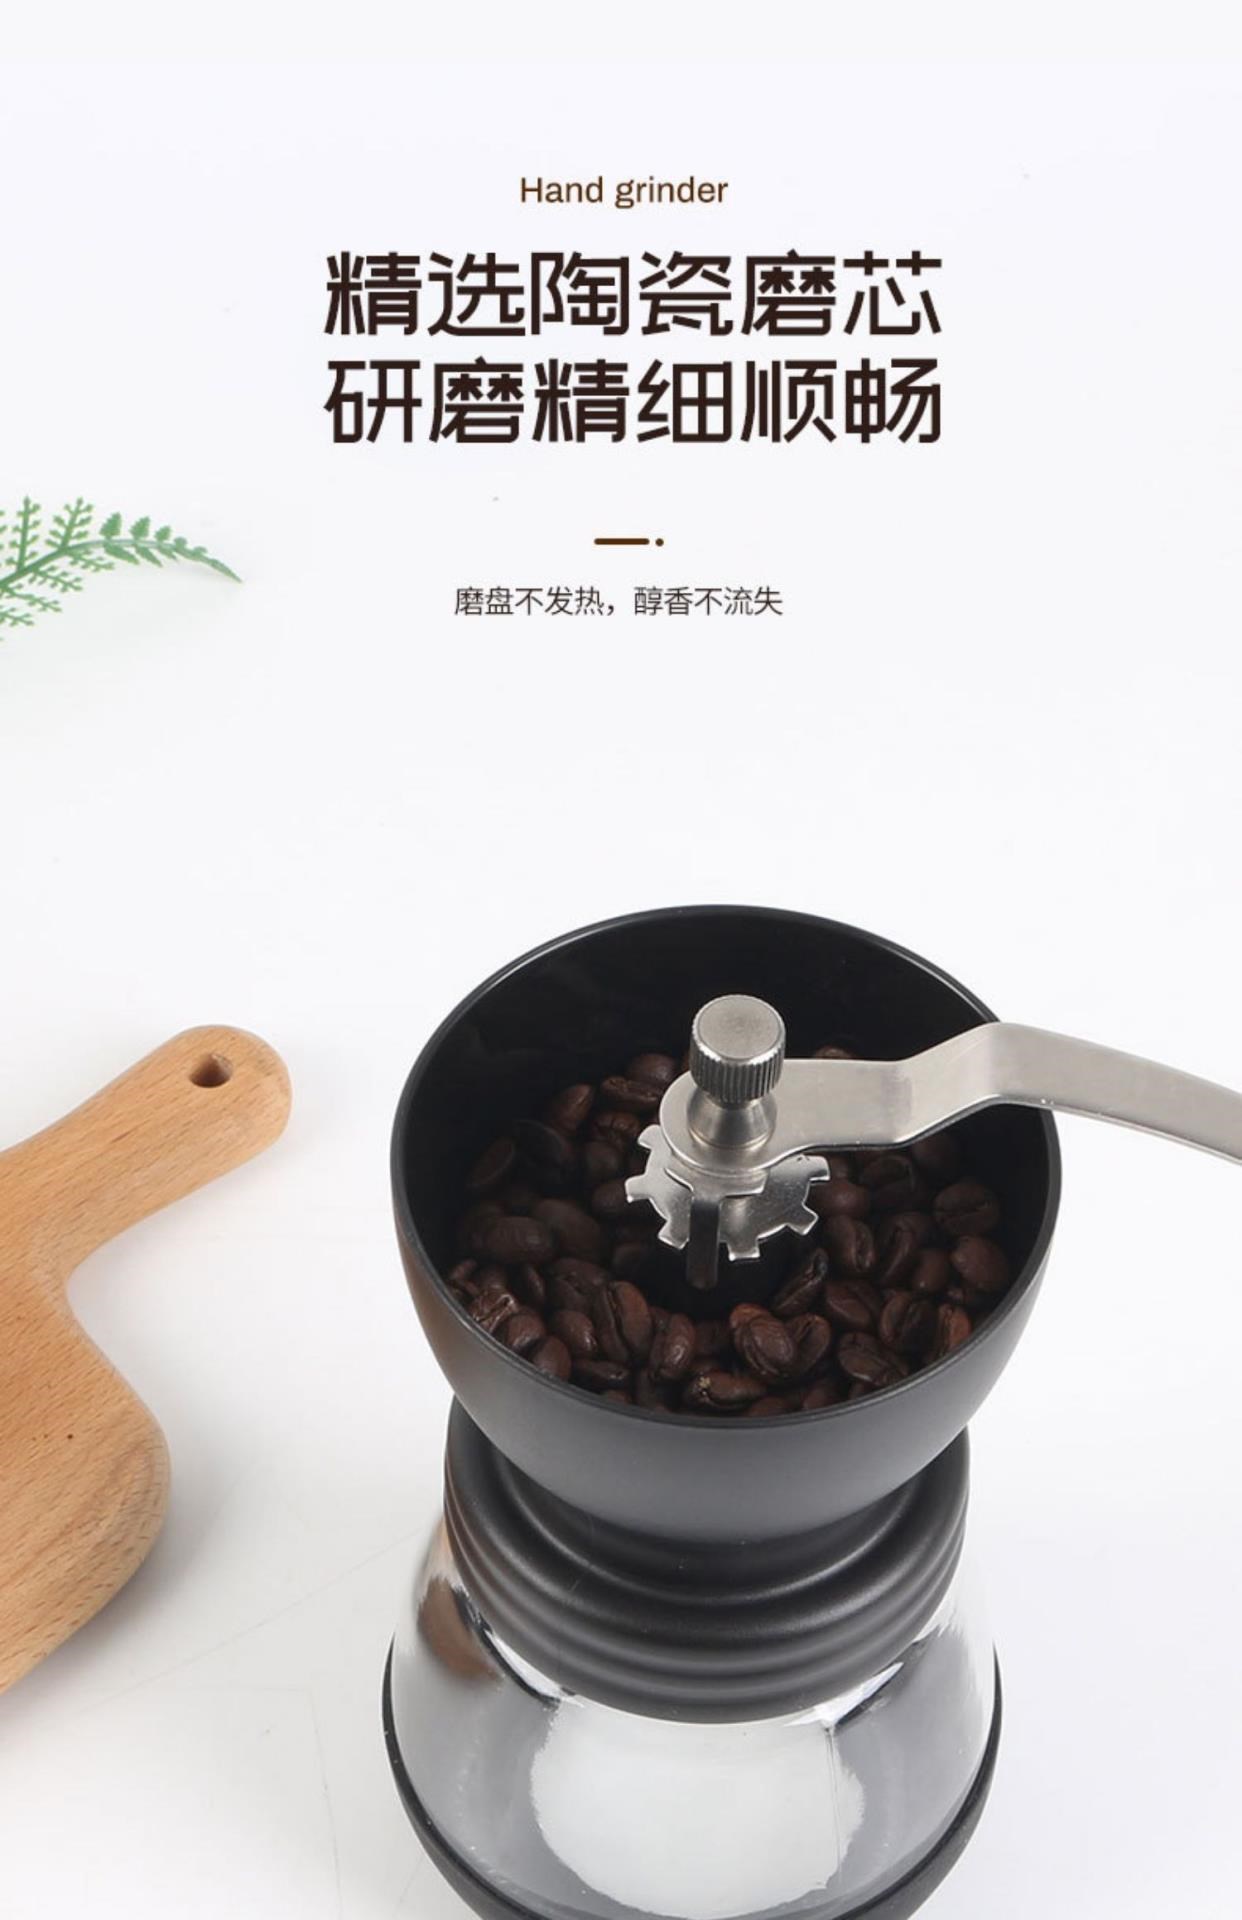 Máy xay cà phê bằng tay Đồ gia dụng bằng gốm Máy pha cà phê bằng tay nhỏ Máy xay hạt cà phê Máy xay hạt cà phê Giá rẻ - Cà phê